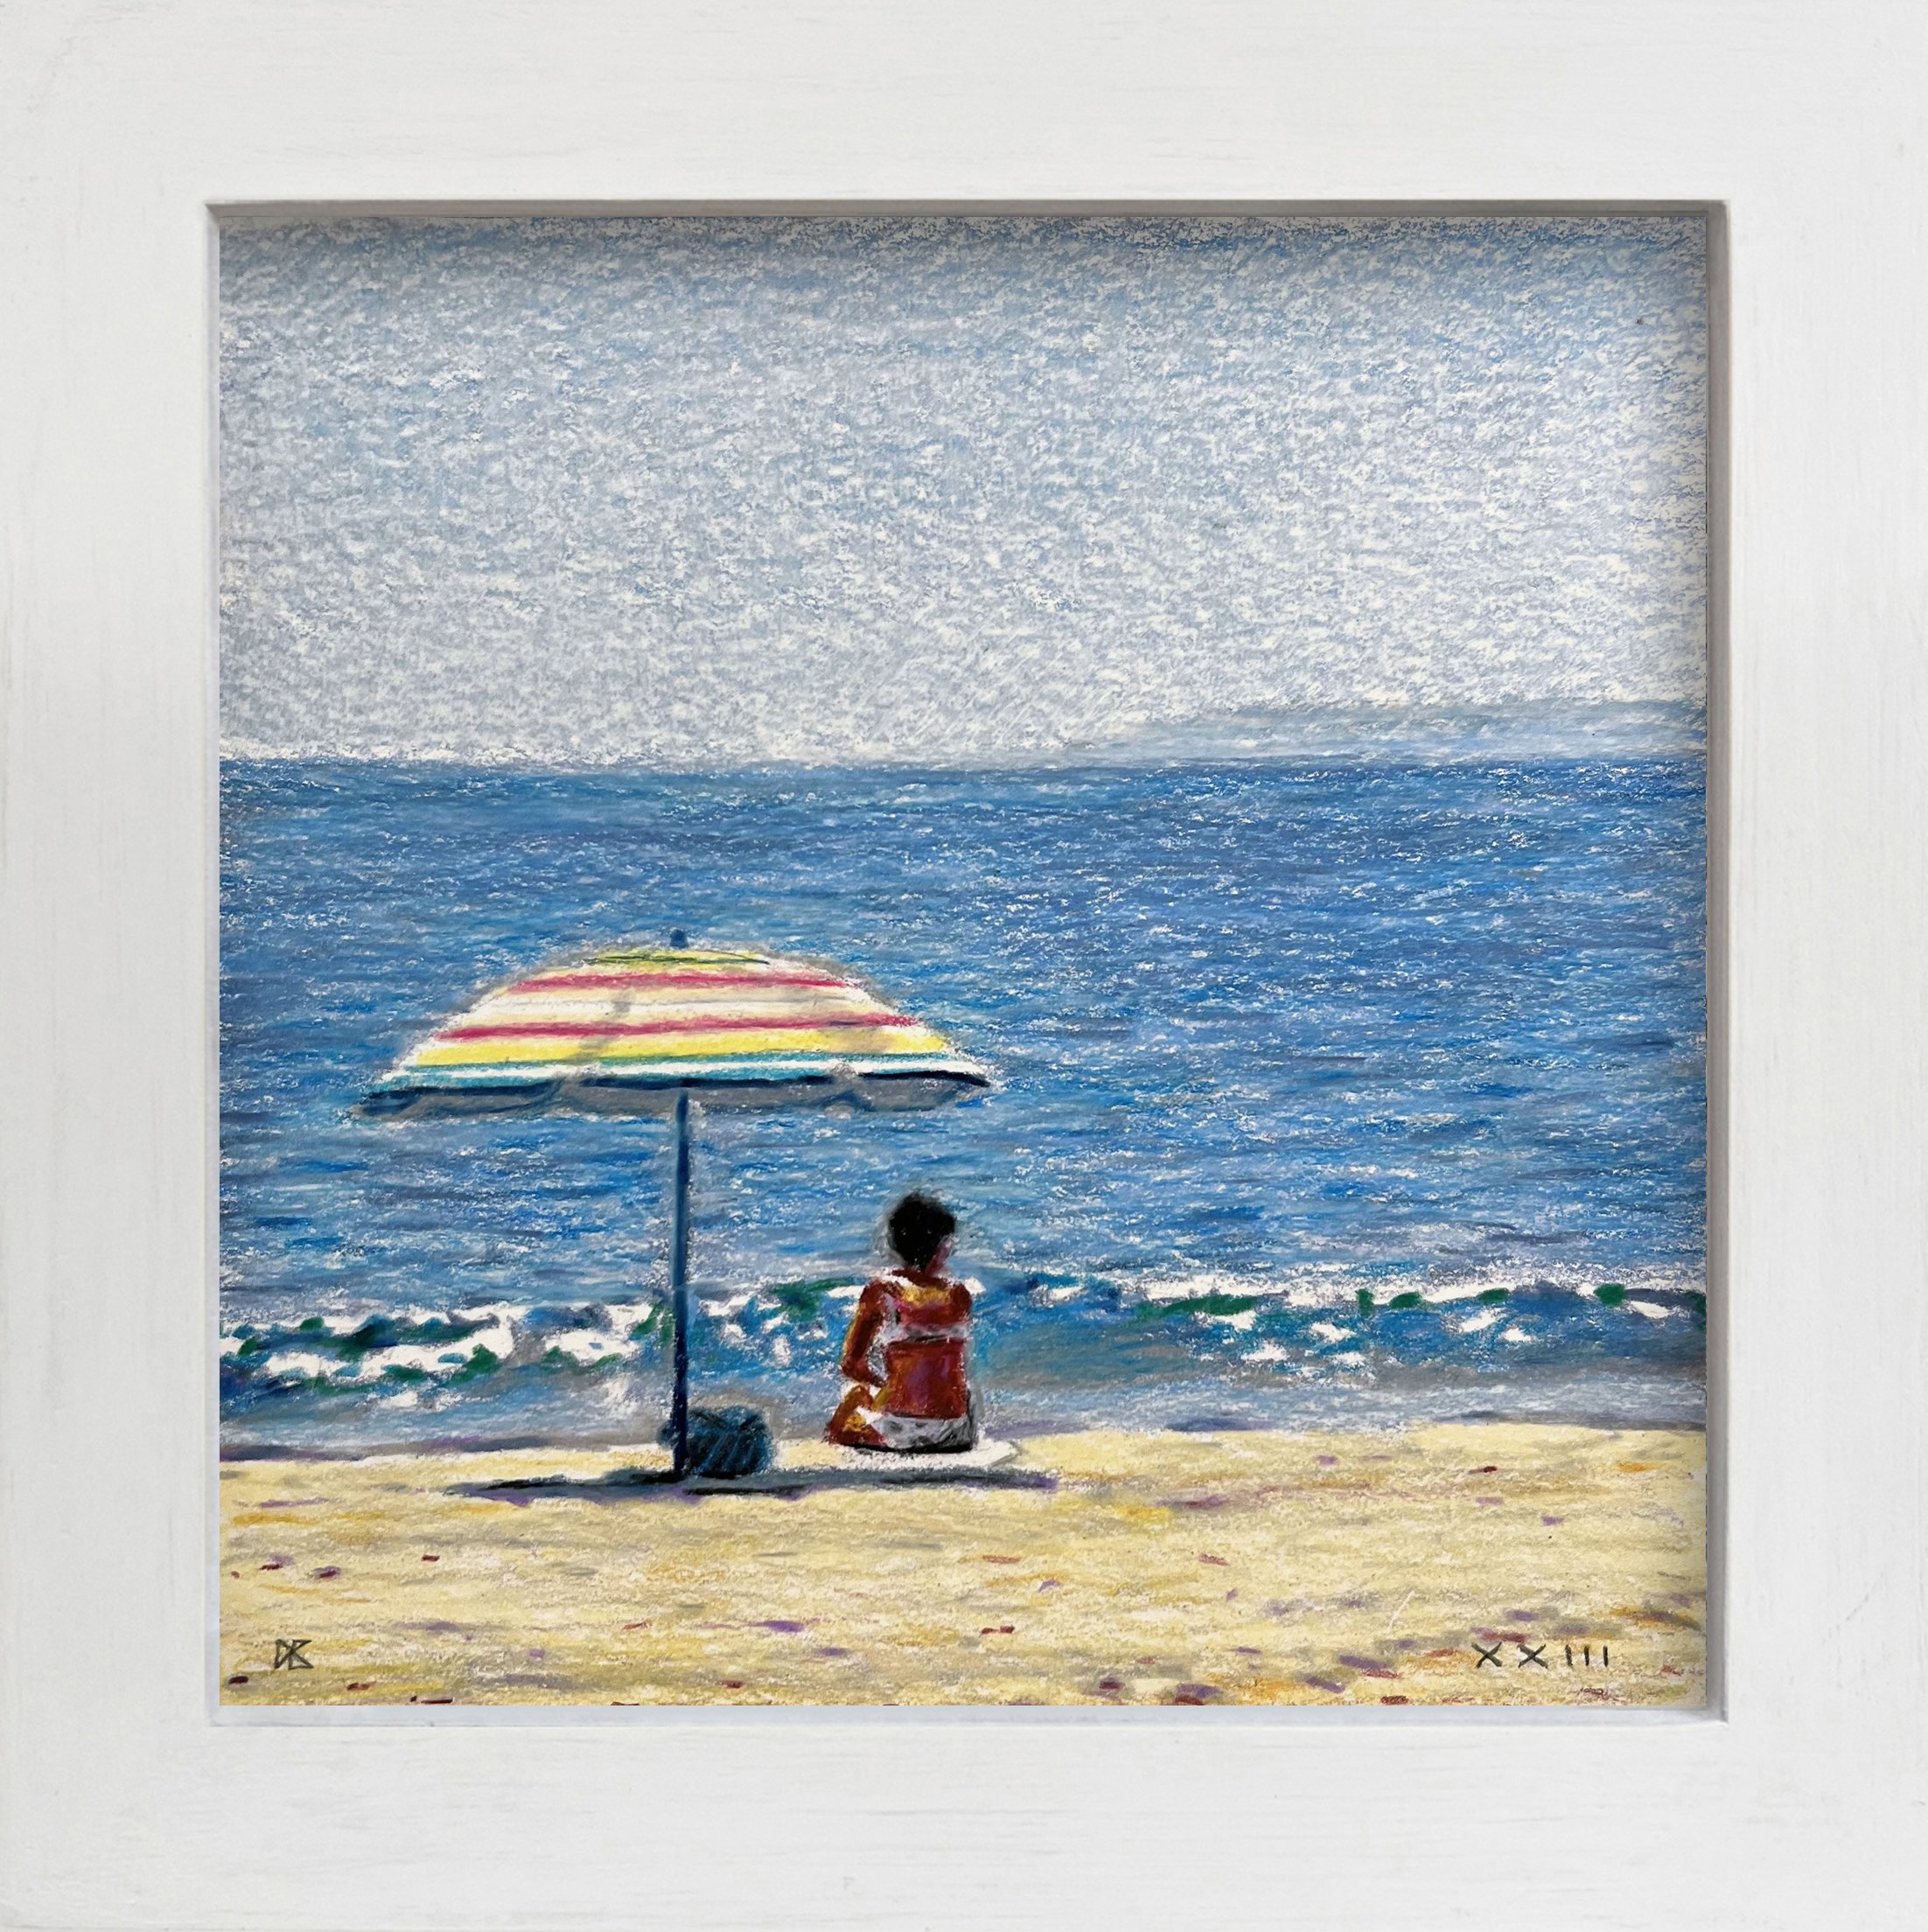 Brighton Beach: Woman with Striped Umbrella